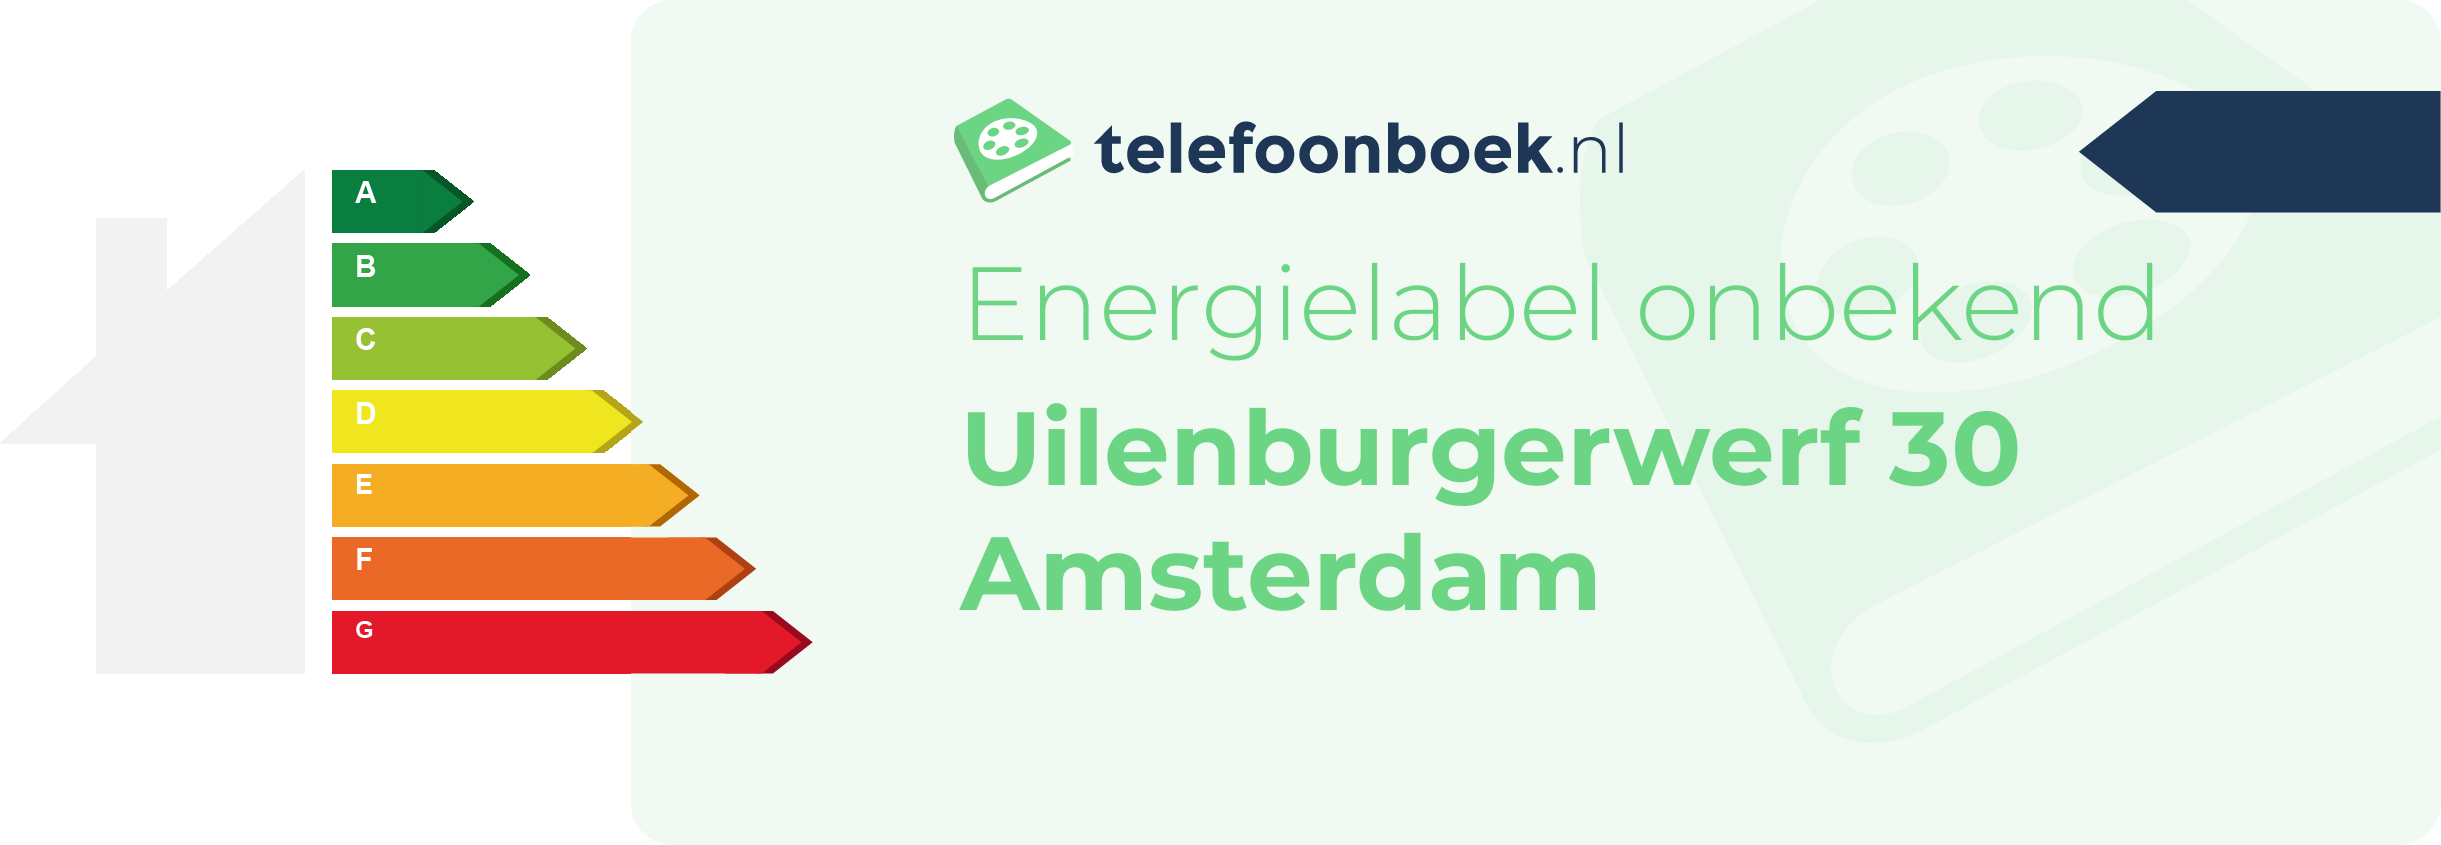 Energielabel Uilenburgerwerf 30 Amsterdam